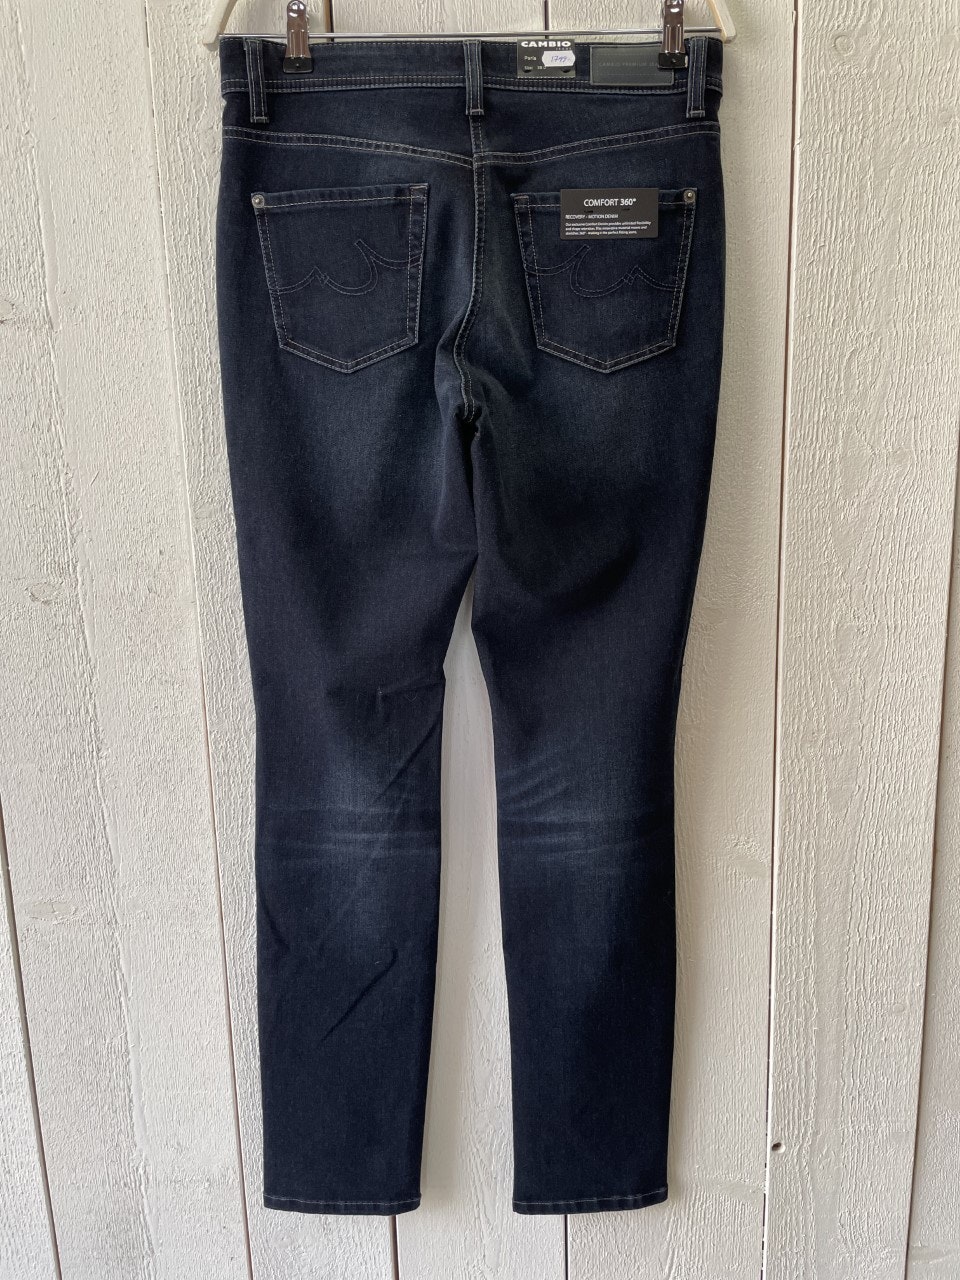 Cambio Jeans " Parla " 360 ° mörkblå med slitningar - Lyckås Klädbutik